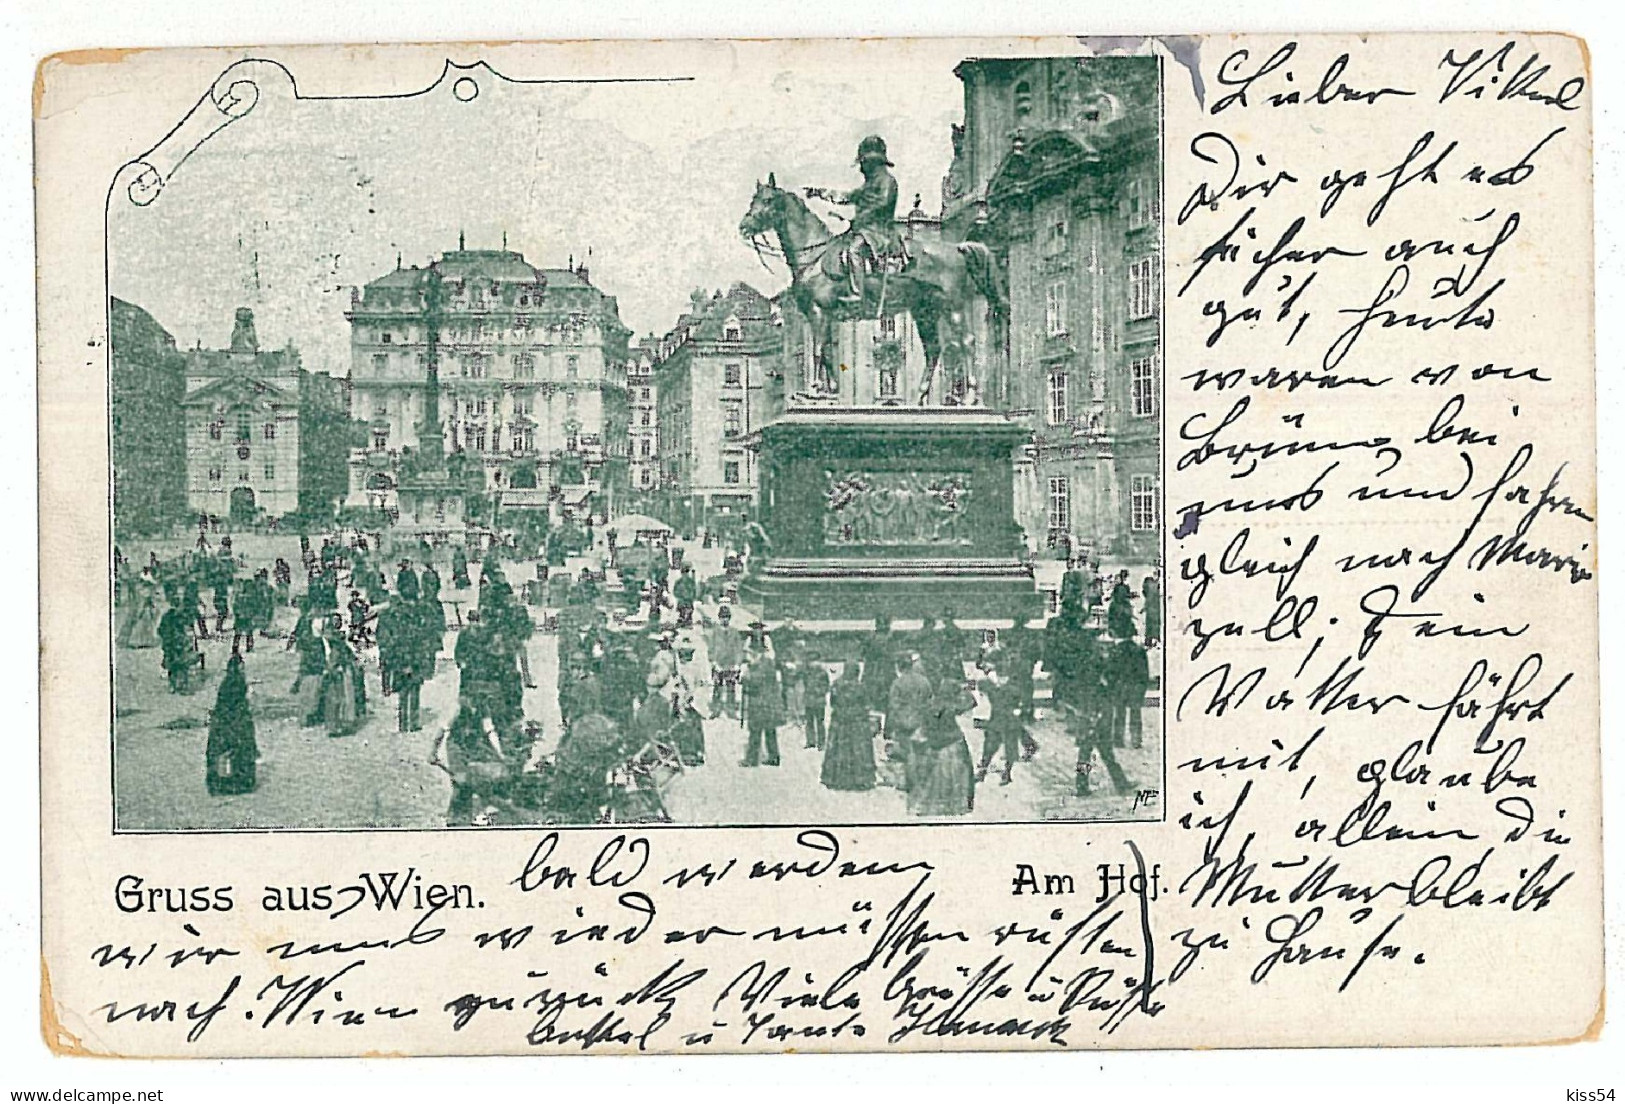 AUS 1 - 6370 VIENNA, Austria - Litho, Market - Old Postcard - Used - 1901 - Vienna Center